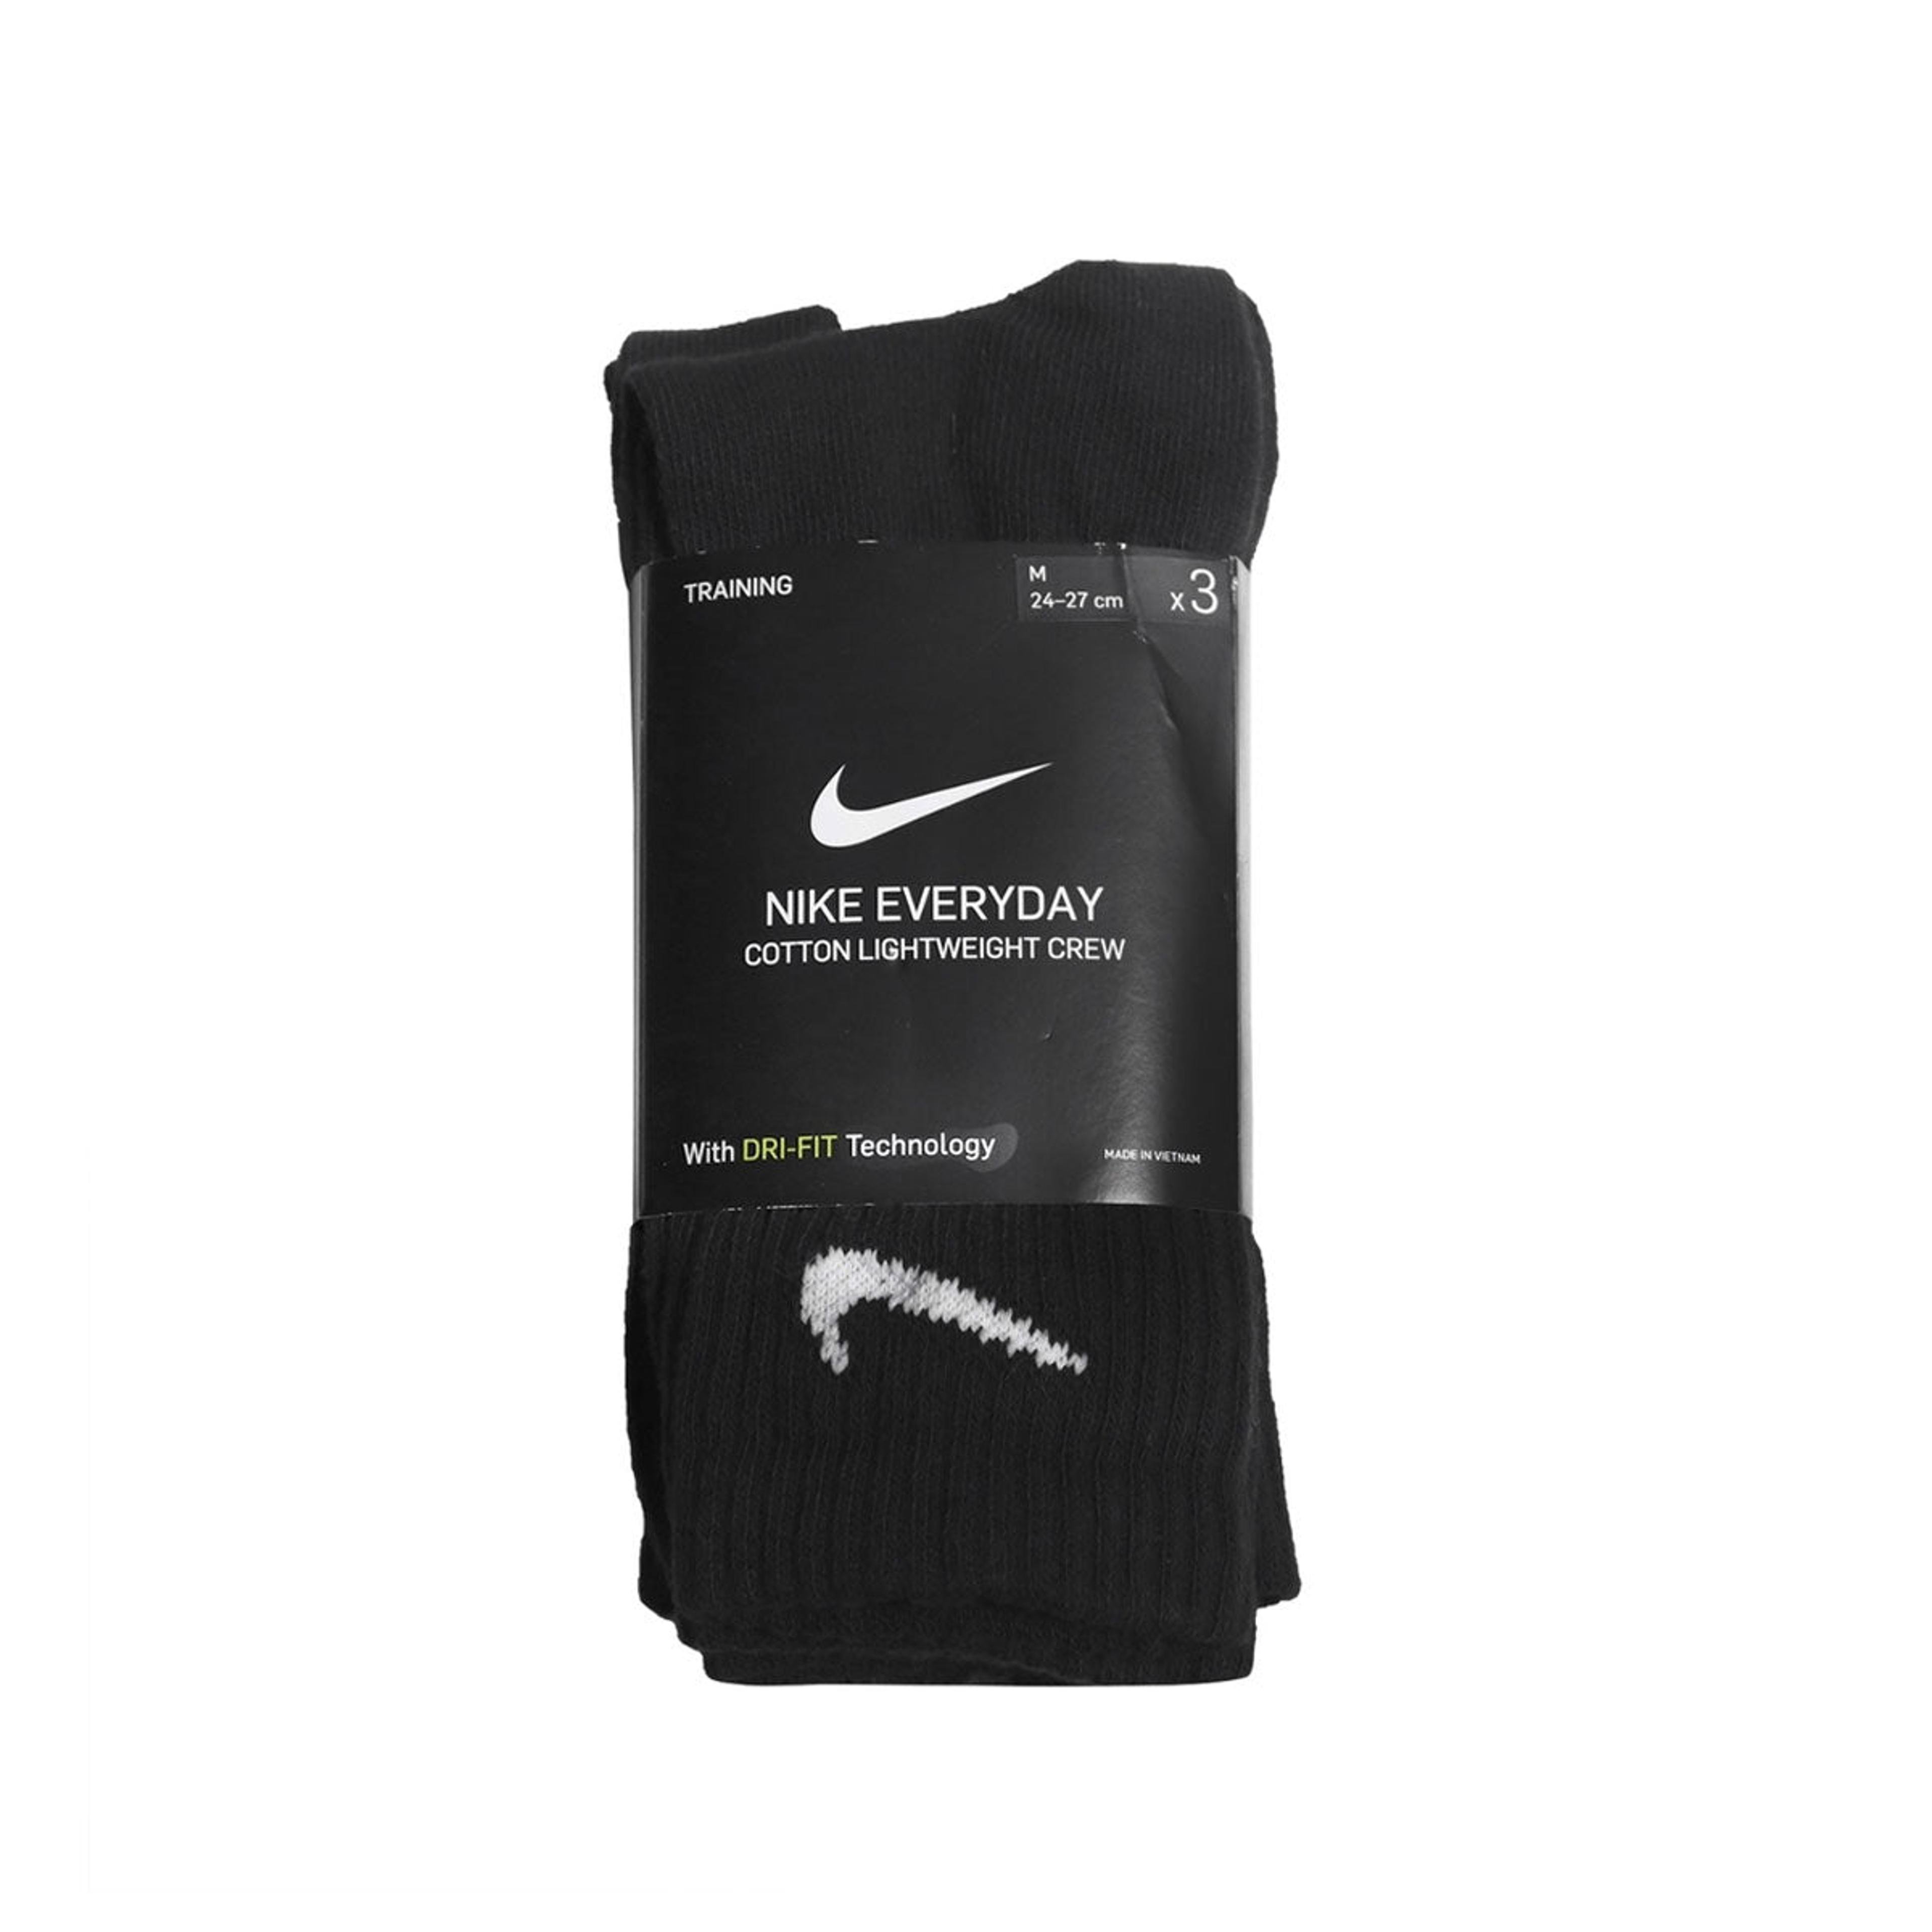 Alternate View 1 of Nike Everyday Training  Crew Socks (3pairs)